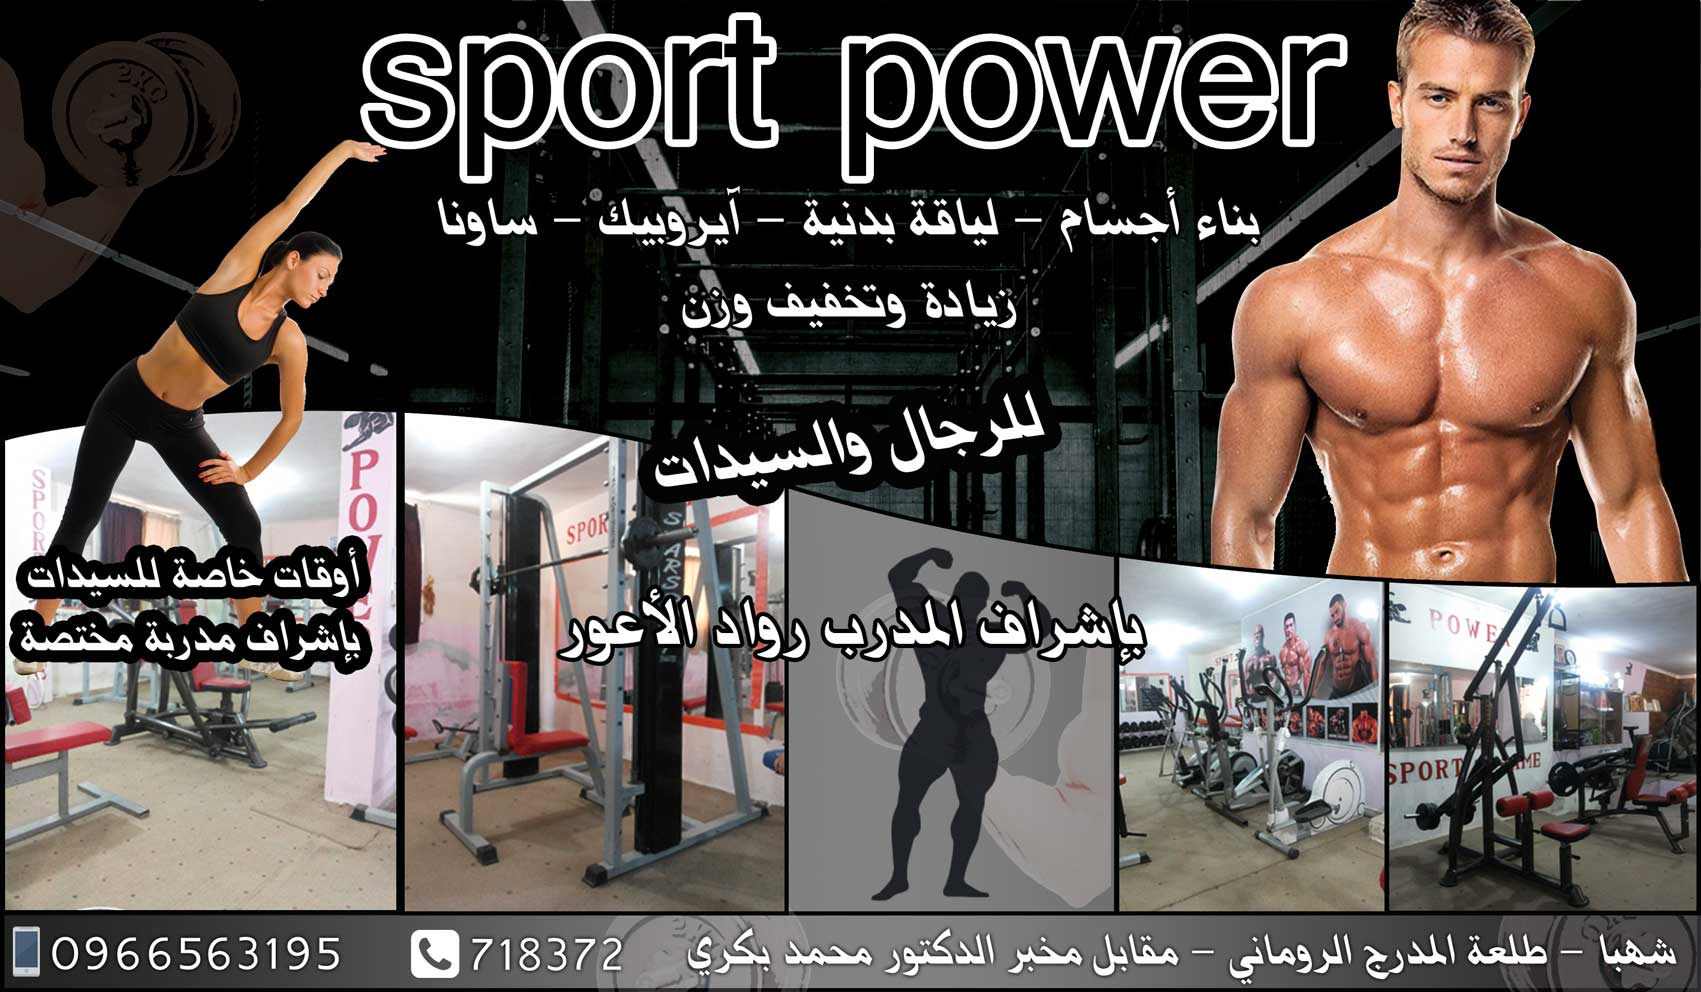 sport power -  - جريدة هدهد الإعلانية